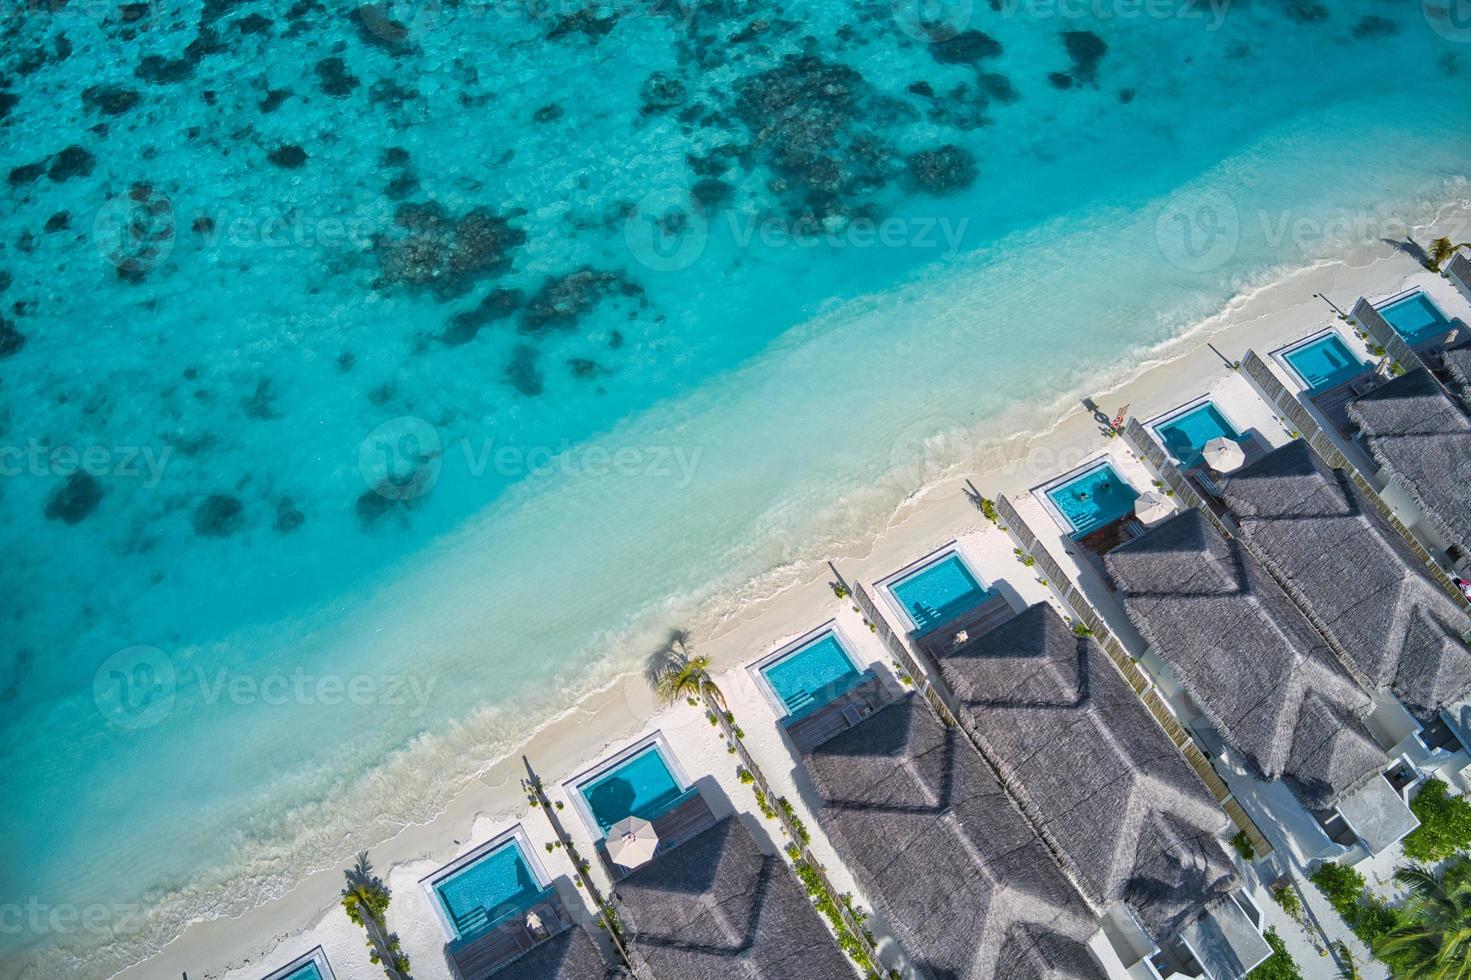 vue aérienne de dessus des villas avec piscine, bungalows sur la plage tropicale paradisiaque des maldives. incroyable lagon bleu turquoise de la mer, eau de la baie de l'océan. destination de vacances de voyage de luxe. beau paysage aérien ensoleillé photo